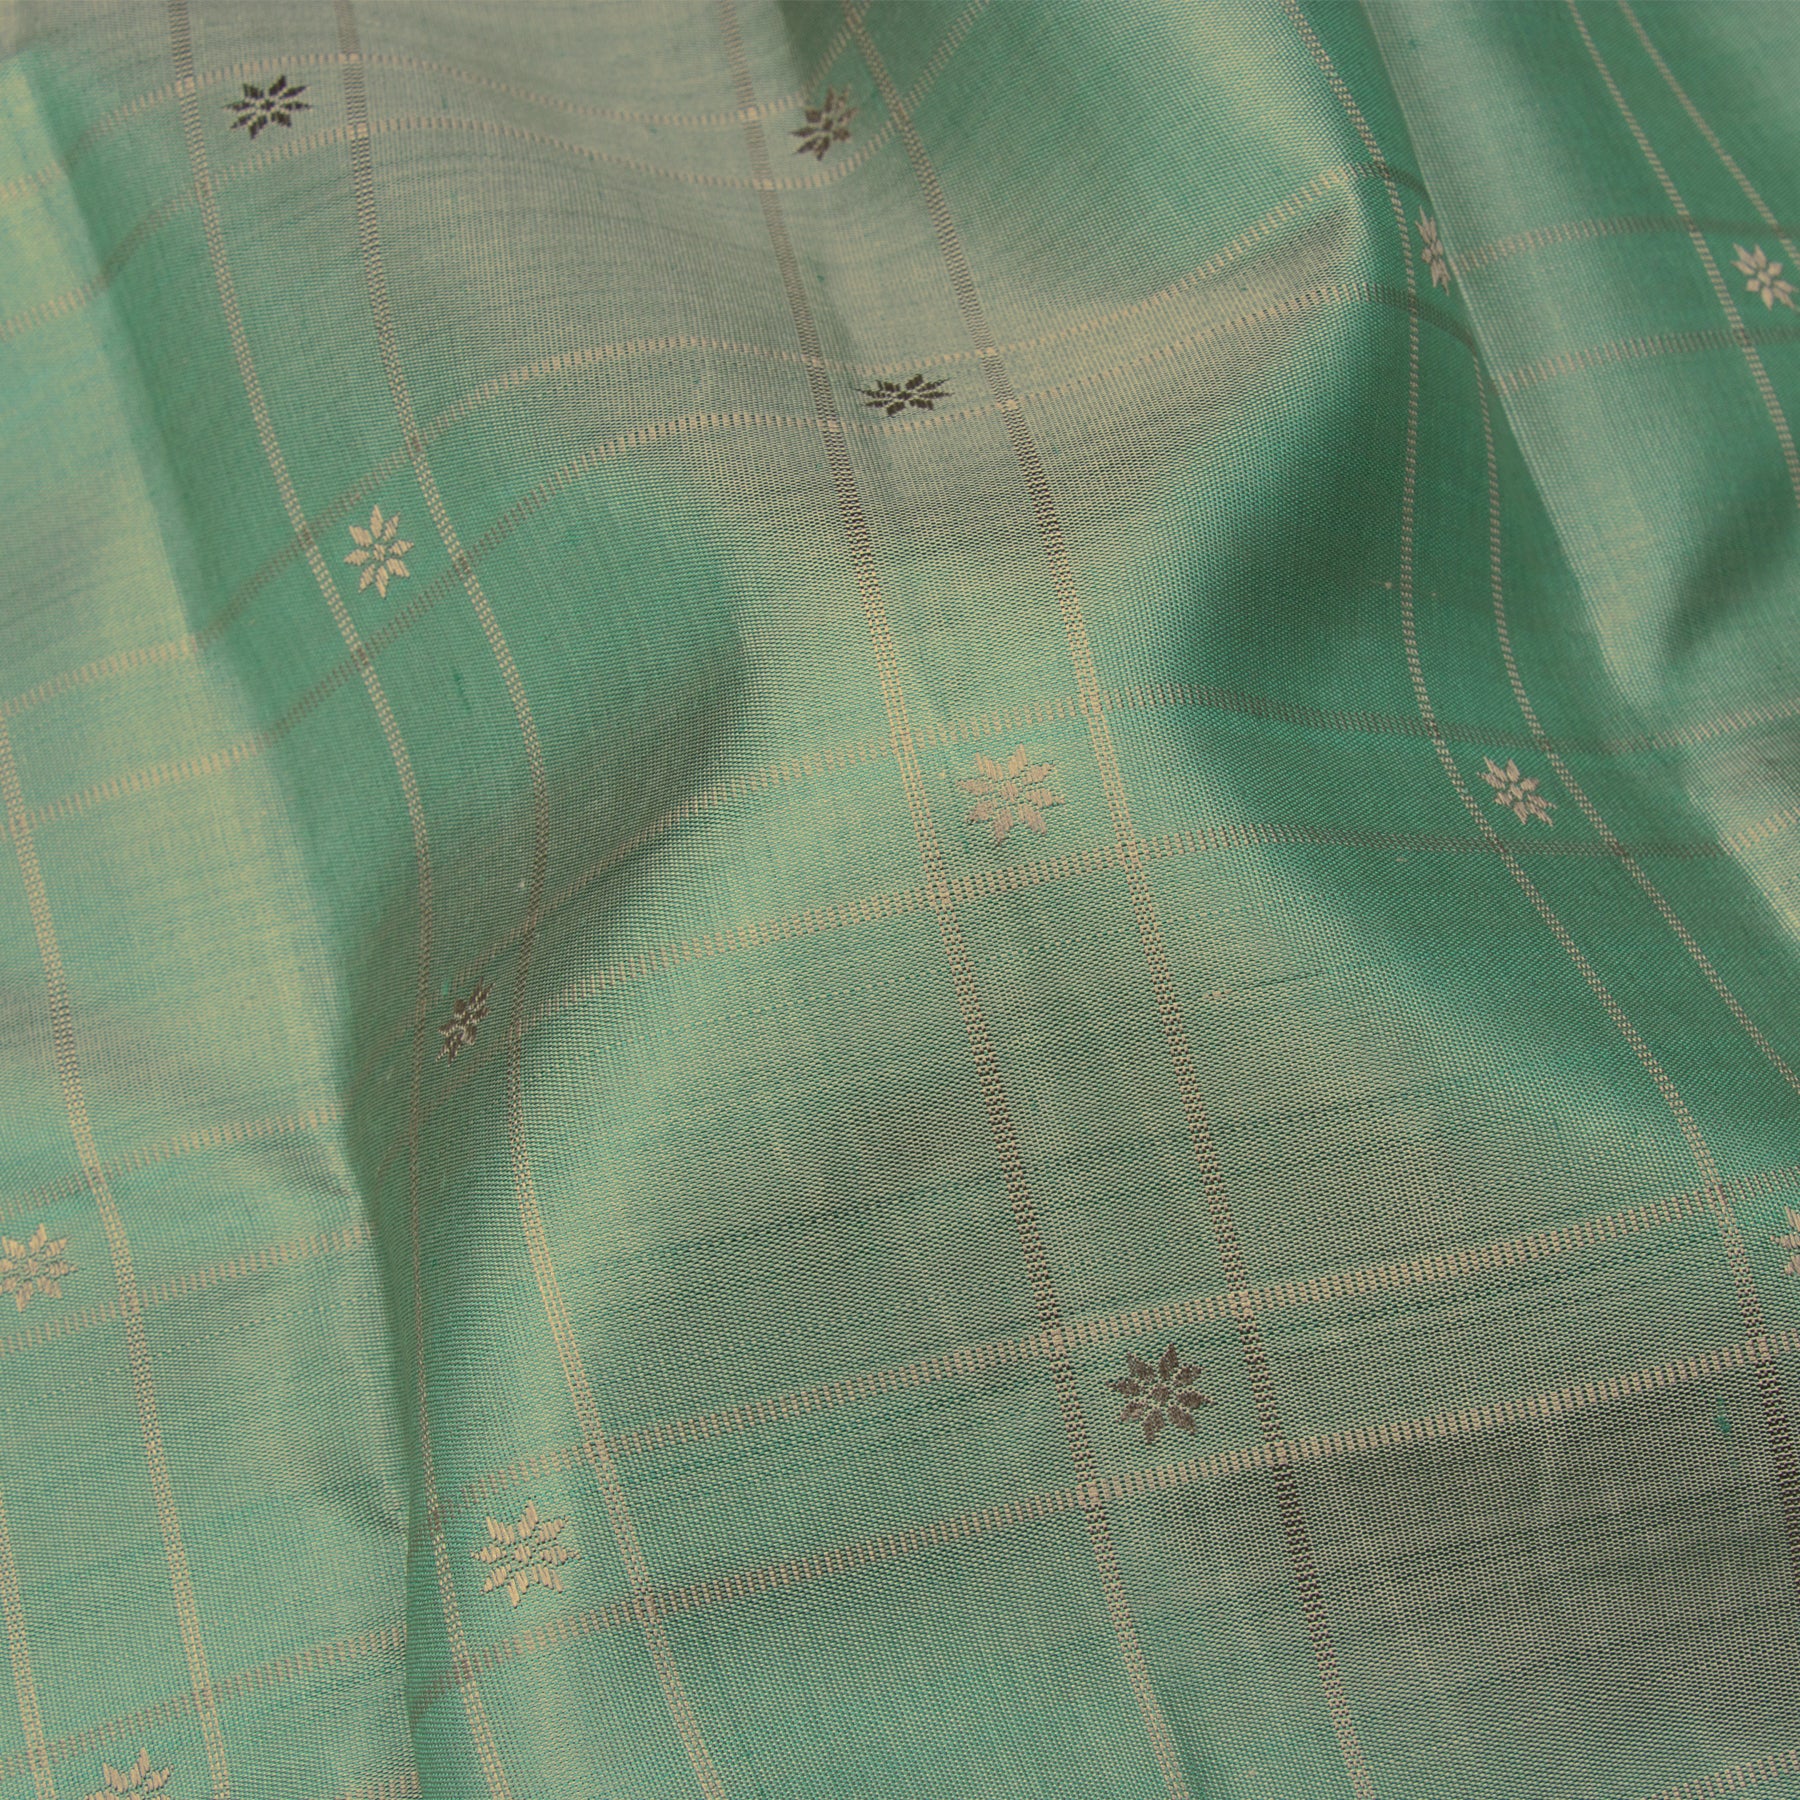 Kanakavalli Kanjivaram Silk Sari 24-595-HS001-00940 - Fabric View